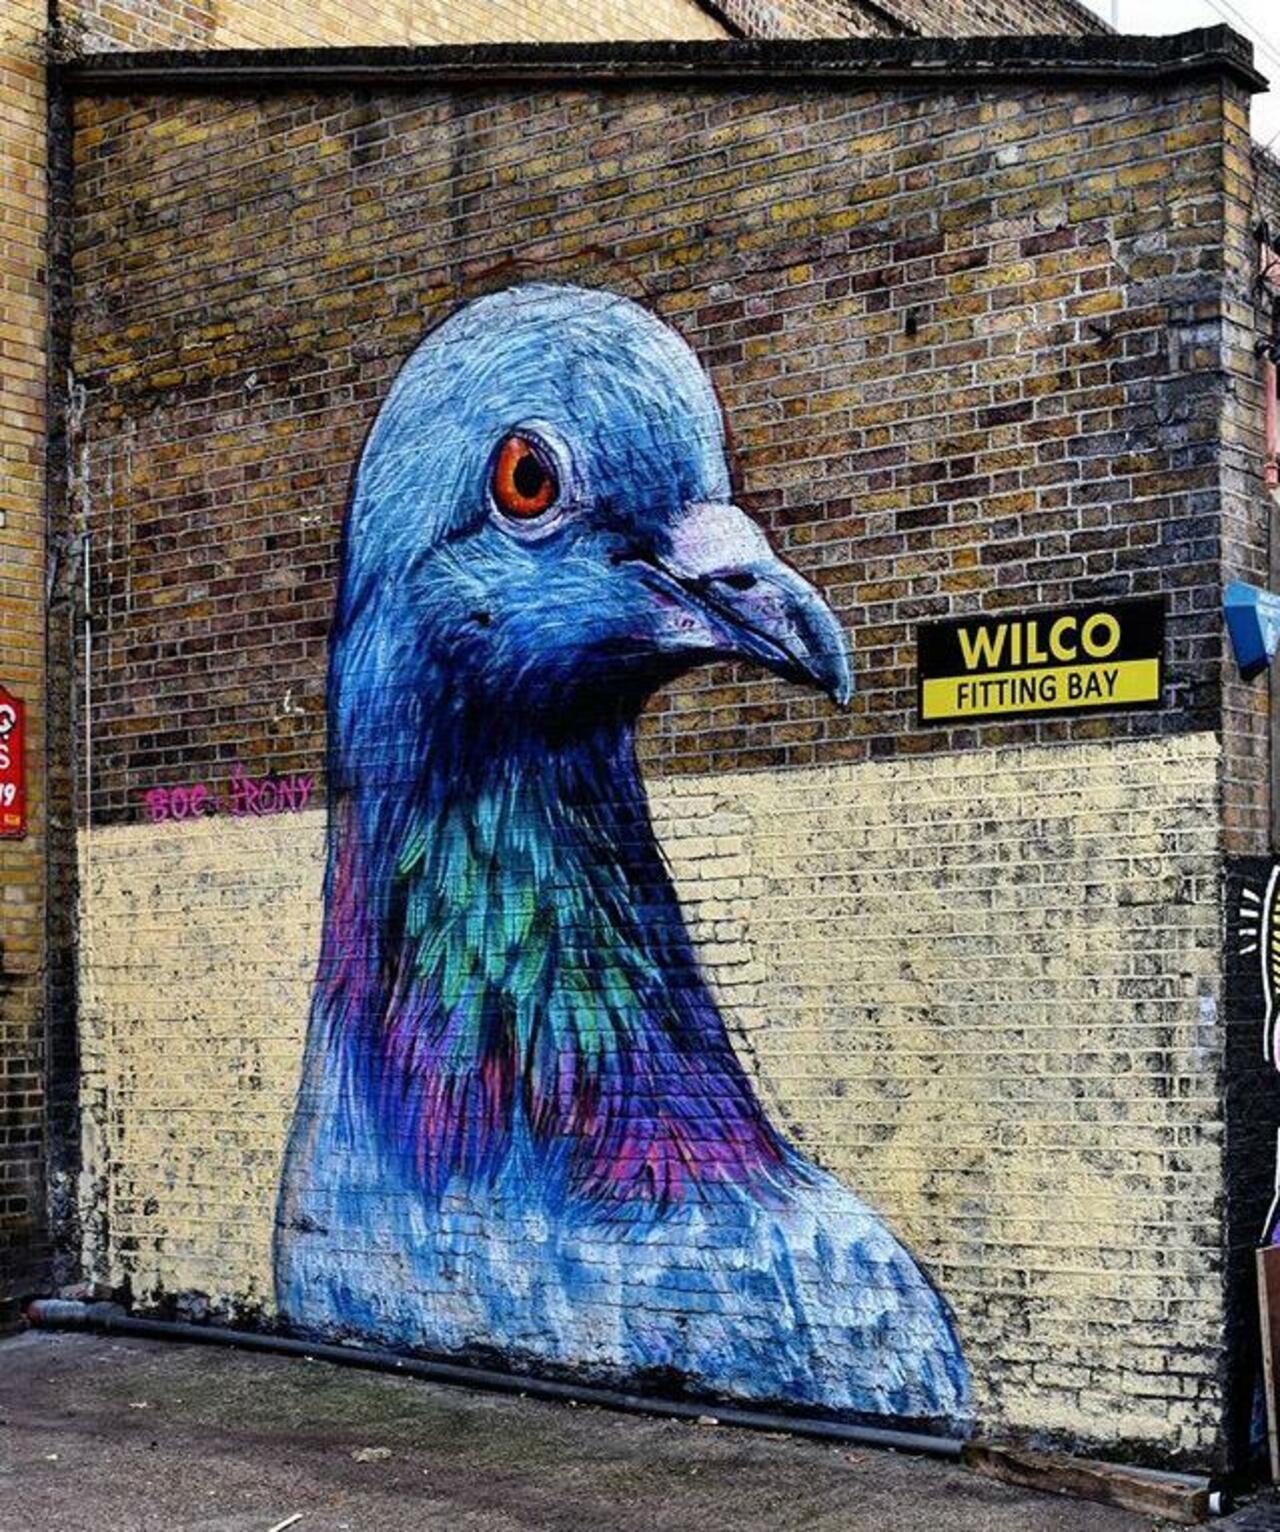 Street Art by Placee Boe & whoamirony in London 

#art #graffiti #mural #streetart http://t.co/r99smm5w39